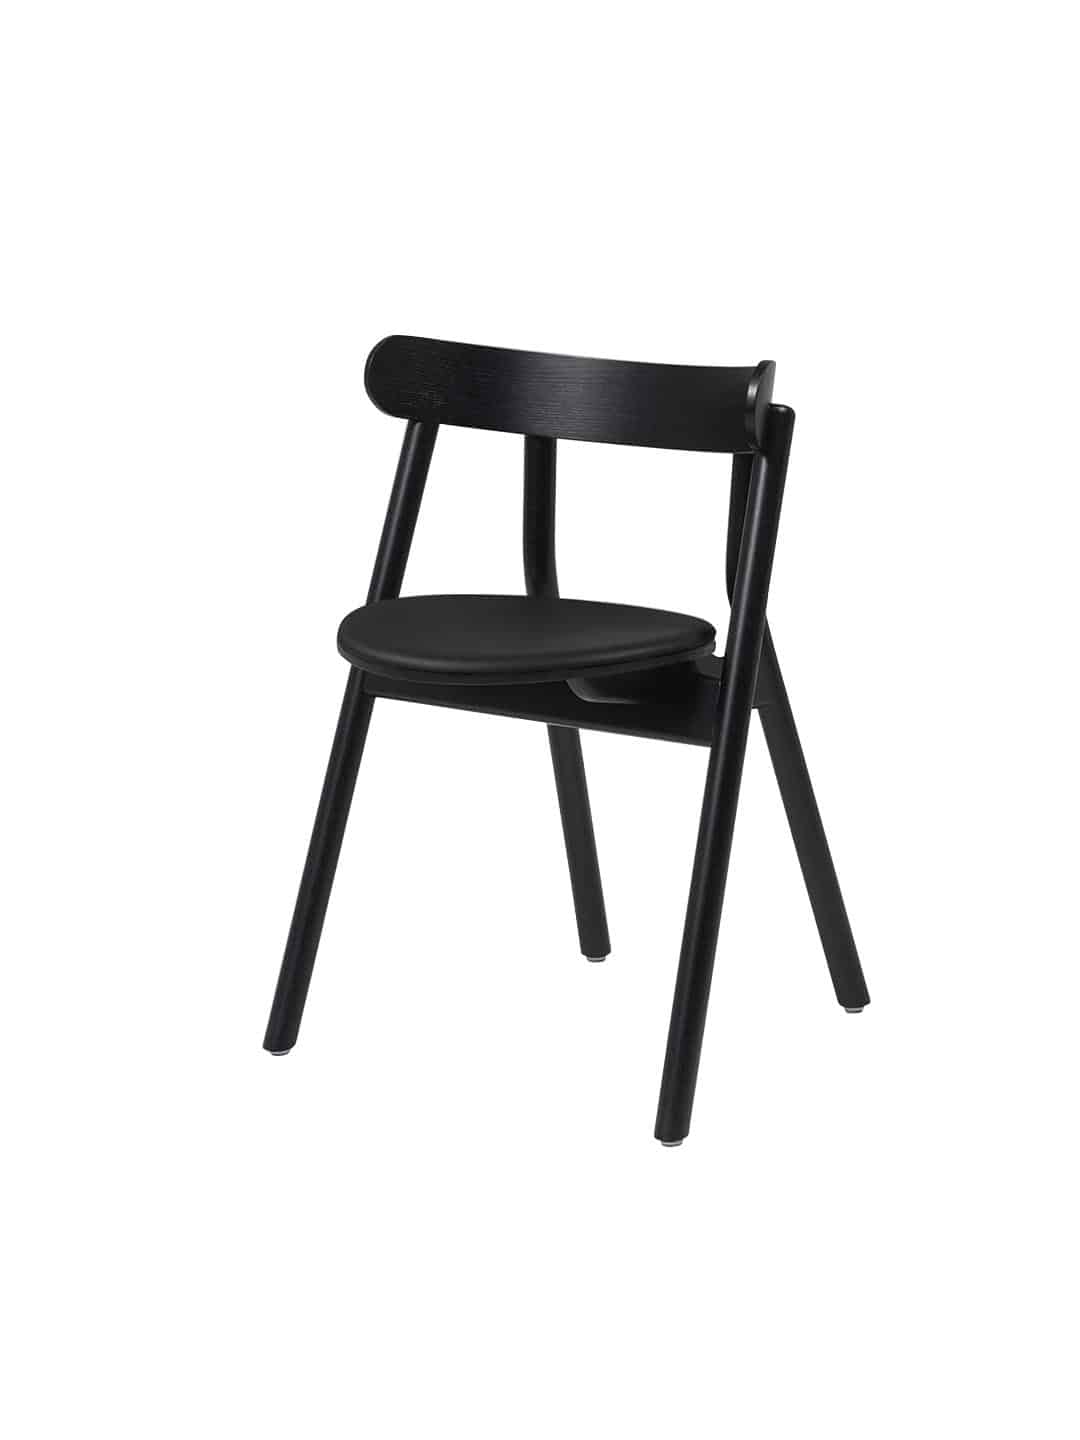 Классический обеденный стул Northern Oaki черного цвета